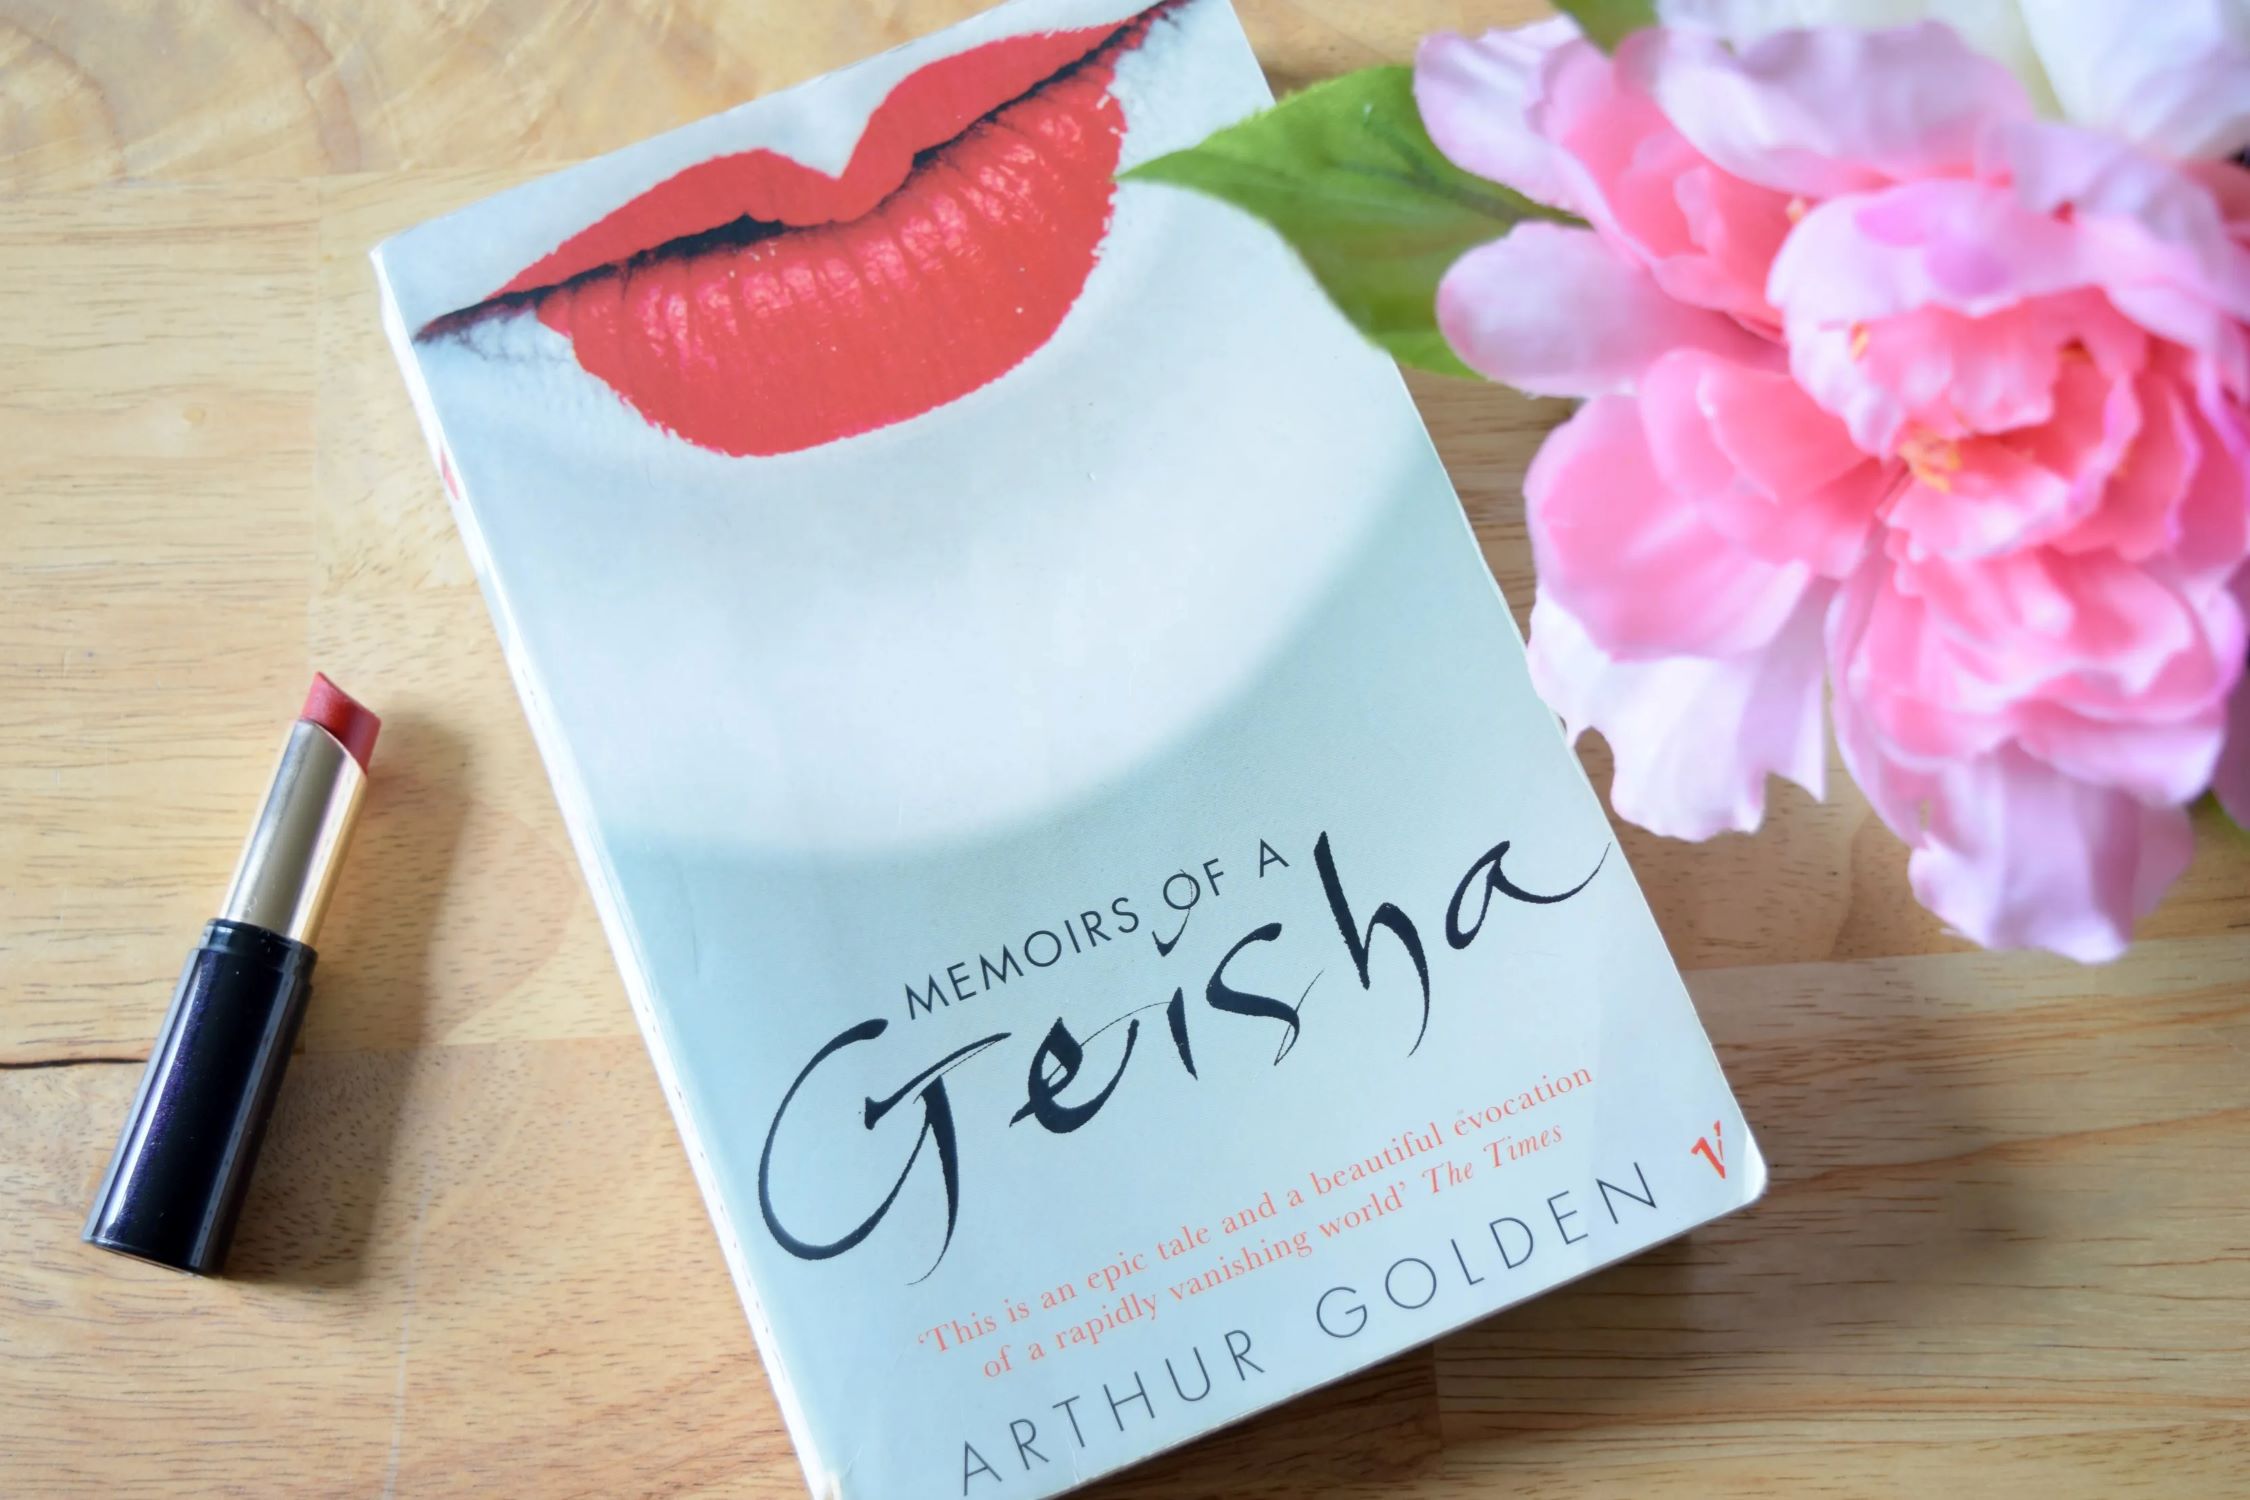 19-extraordinary-facts-about-memoirs-of-a-geisha-arthur-golden